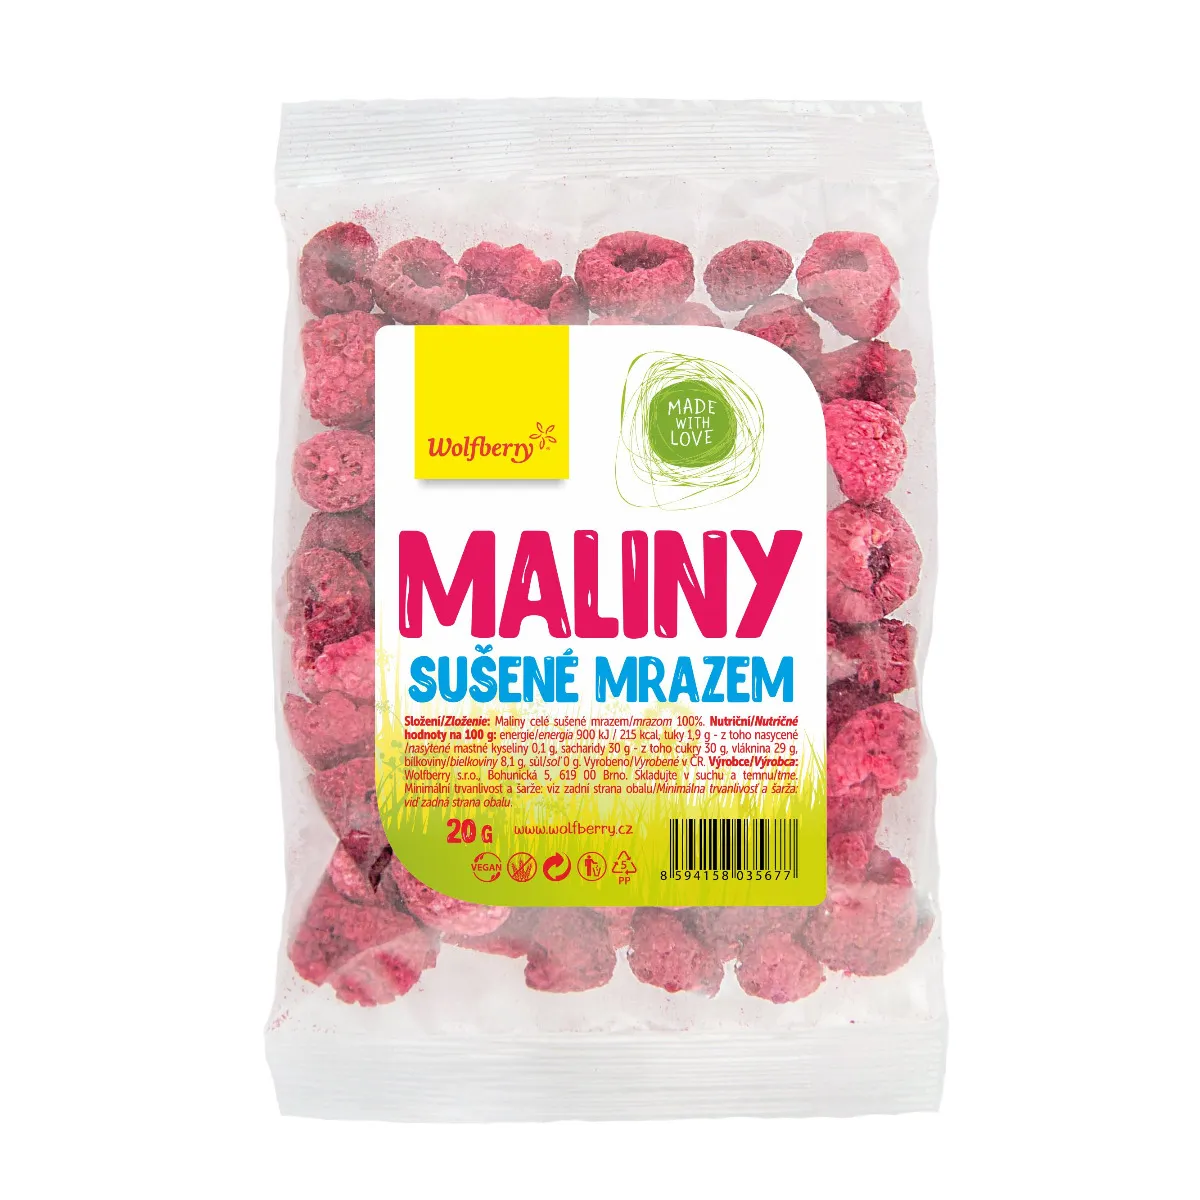 Wolfberry Maliny